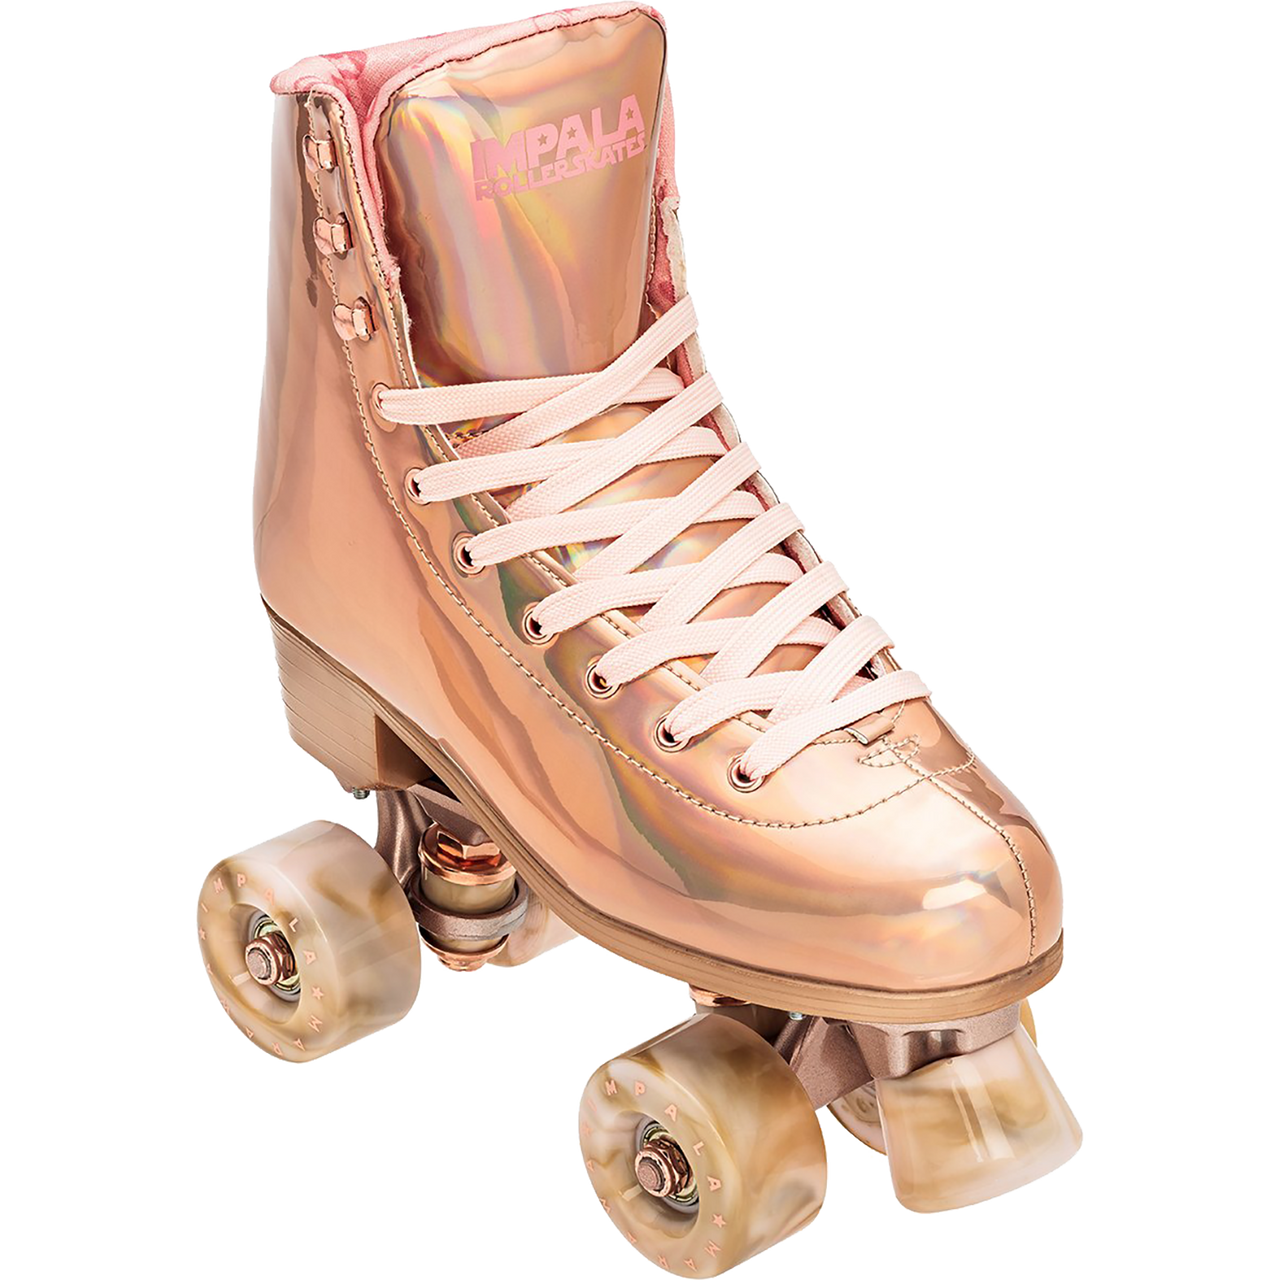 Holographic Impala Sidewalk Womens Roller Skates Size 2